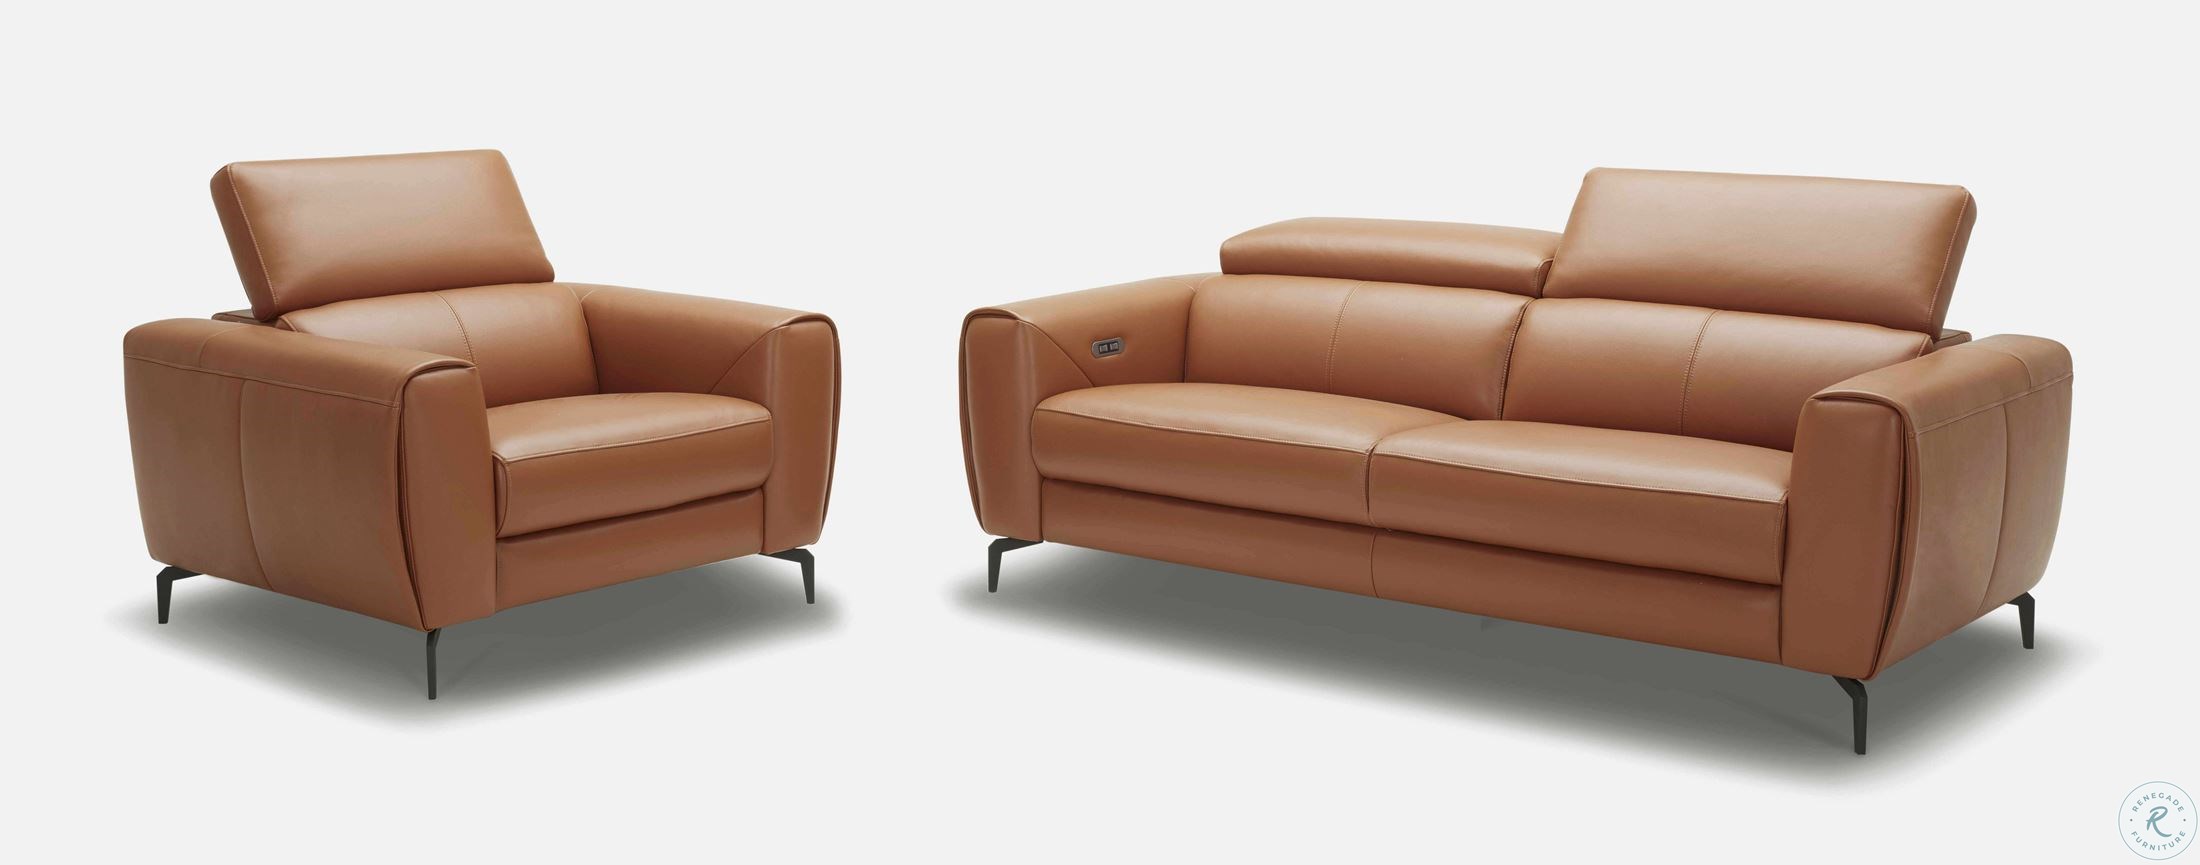 Lorenzo Caramel Leather Sofa From Jnm, Lorenzo Leather Furniture